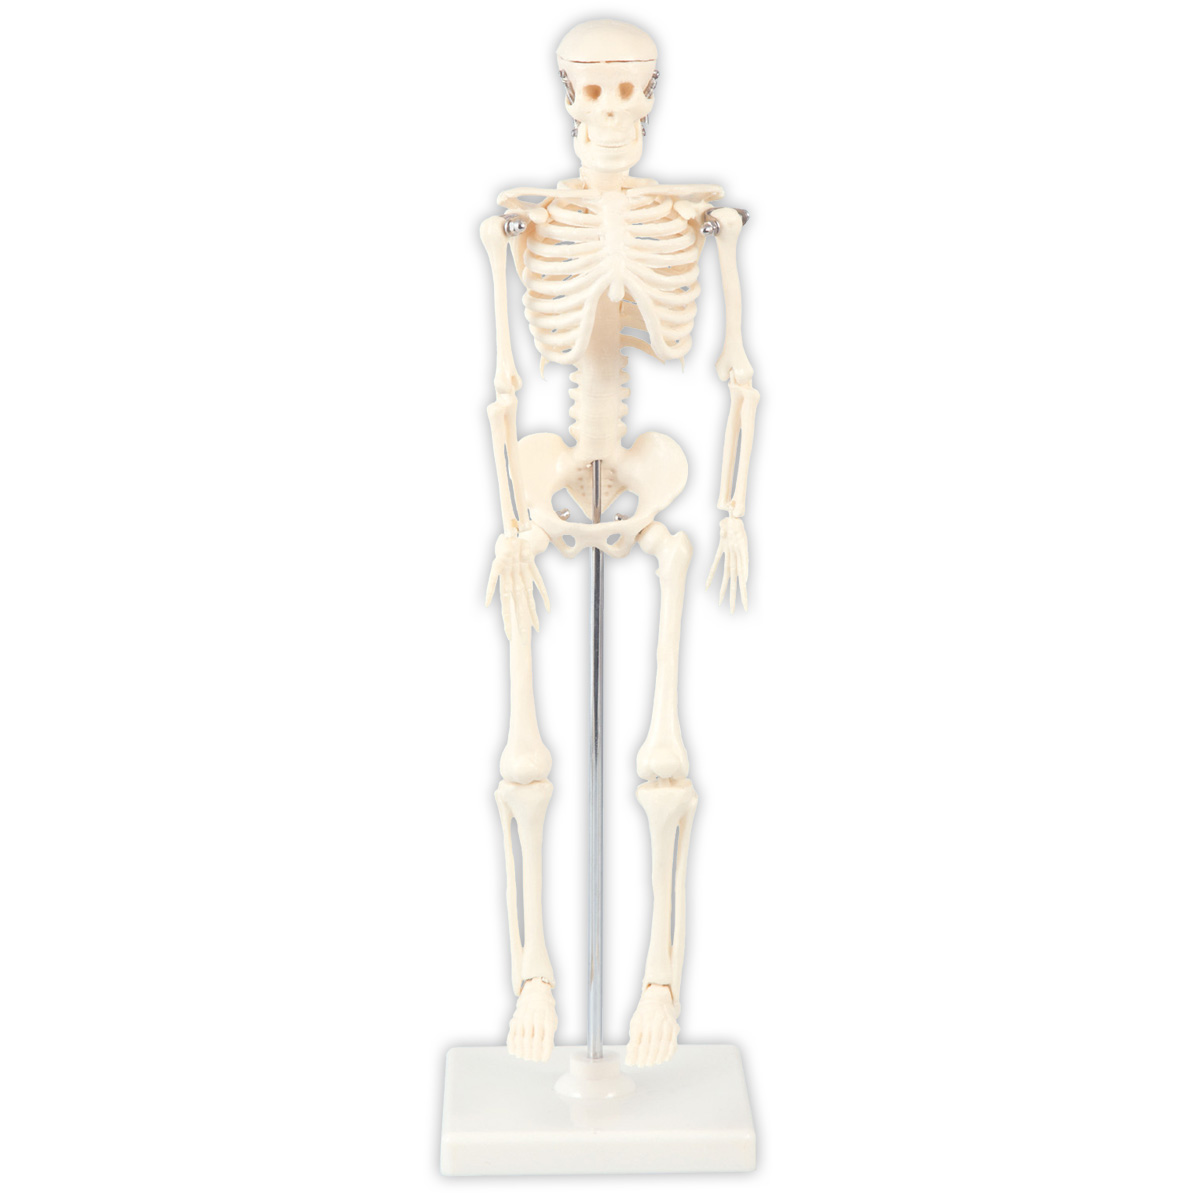 楽天市場 人体模型 全身 骨 42cm スタンド付 ミニ 人体骨格模型 おもちゃ 理科 観察 学校教材 学習教材 骨格標本 自由研究 室内 ルーペスタジオ